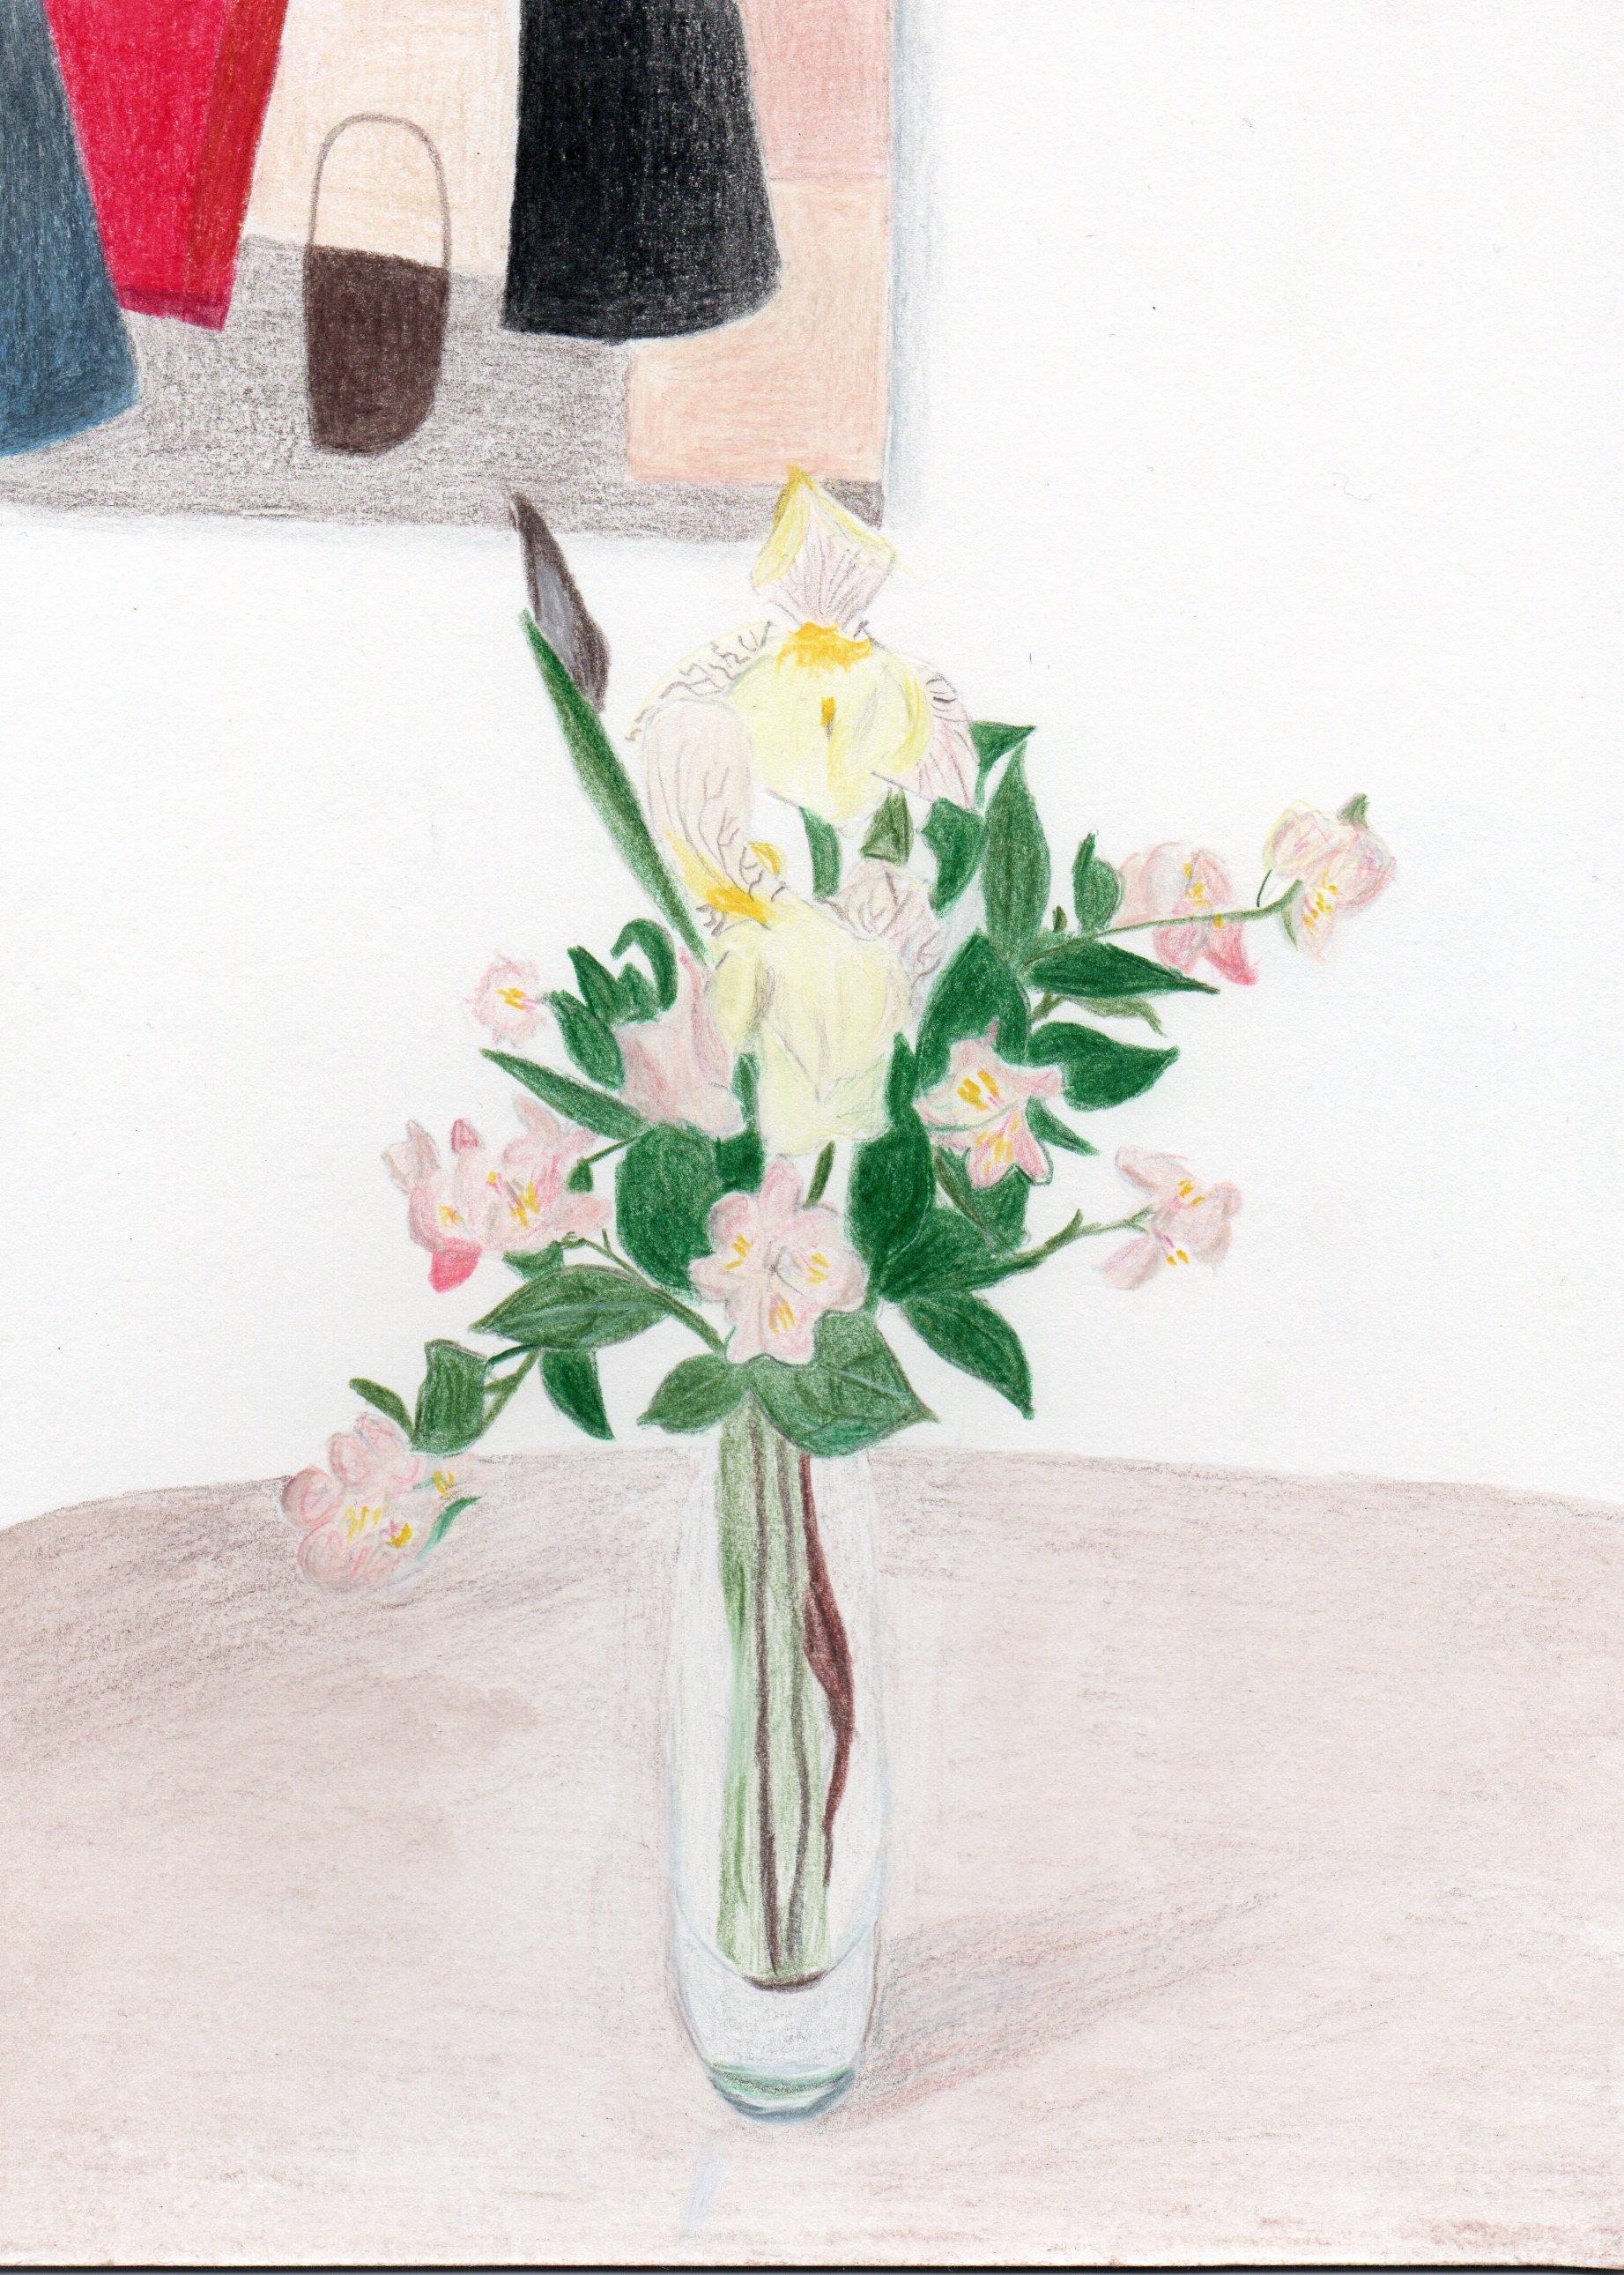 Gabriel Riesnert Landscape Art – Seringa mit Vase – Bunte Bleistifte, Blumen, Inneneinrichtung